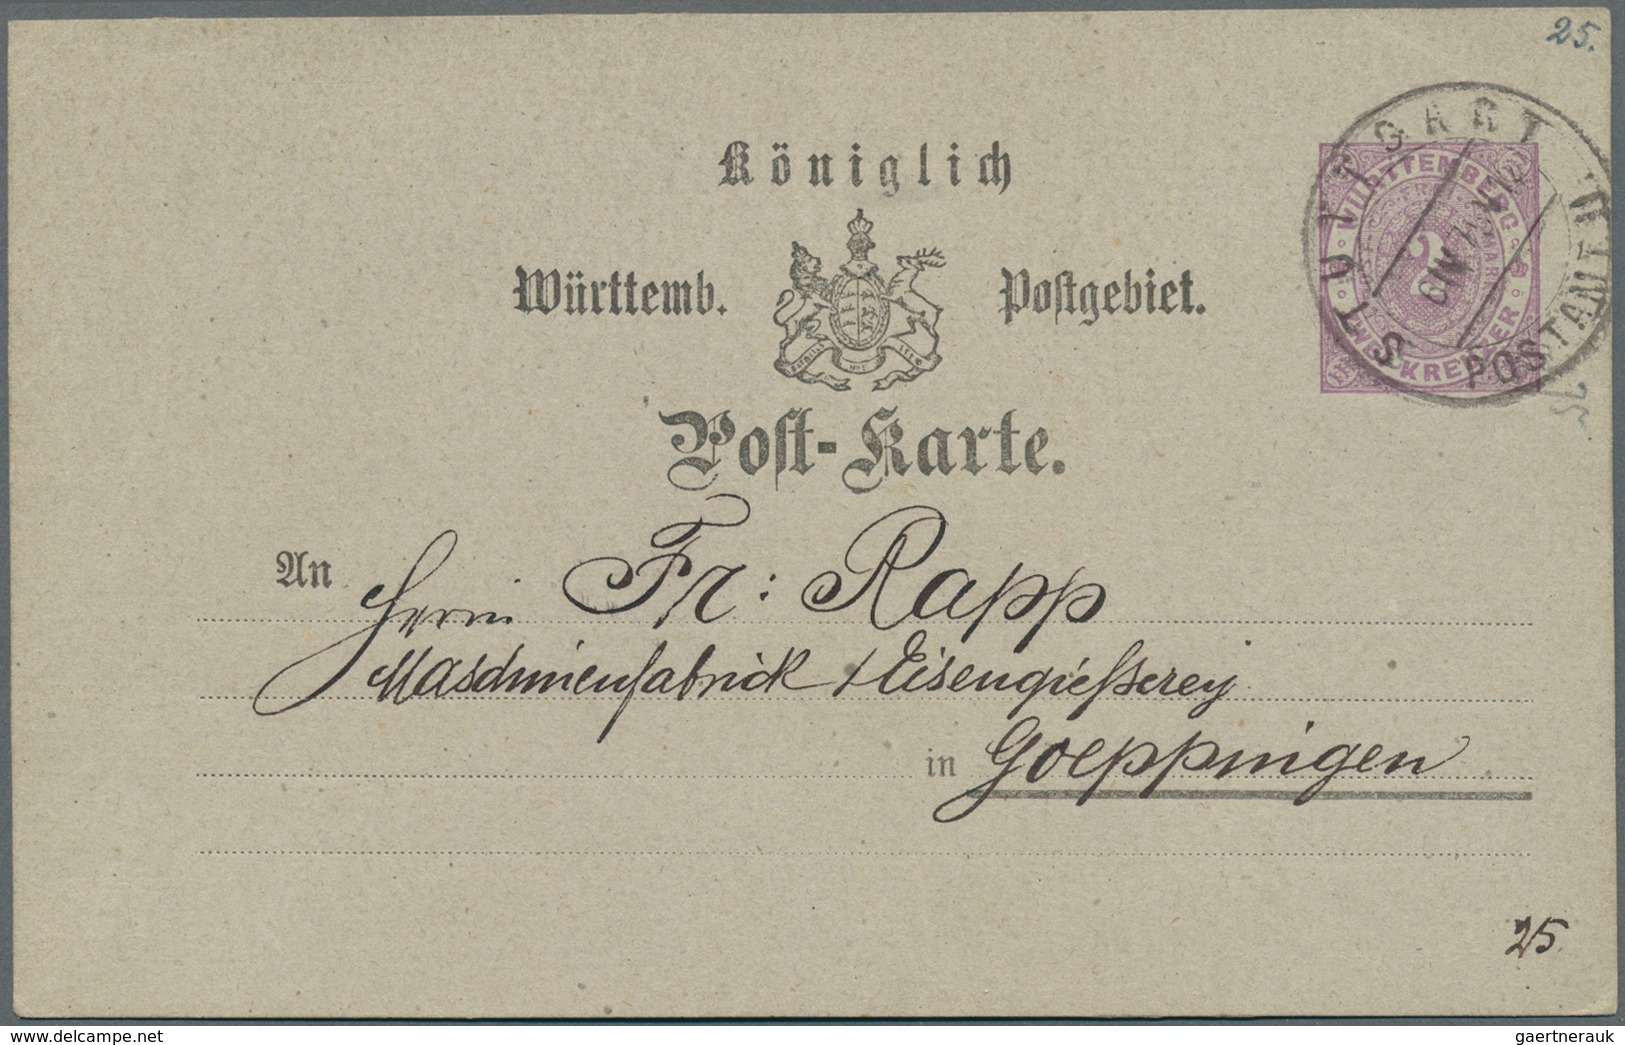 Württemberg - Ganzsachen: 1875/1918, Partie von ca. 50 gebrauchten und ungebrauchten Ganzsachen, dab